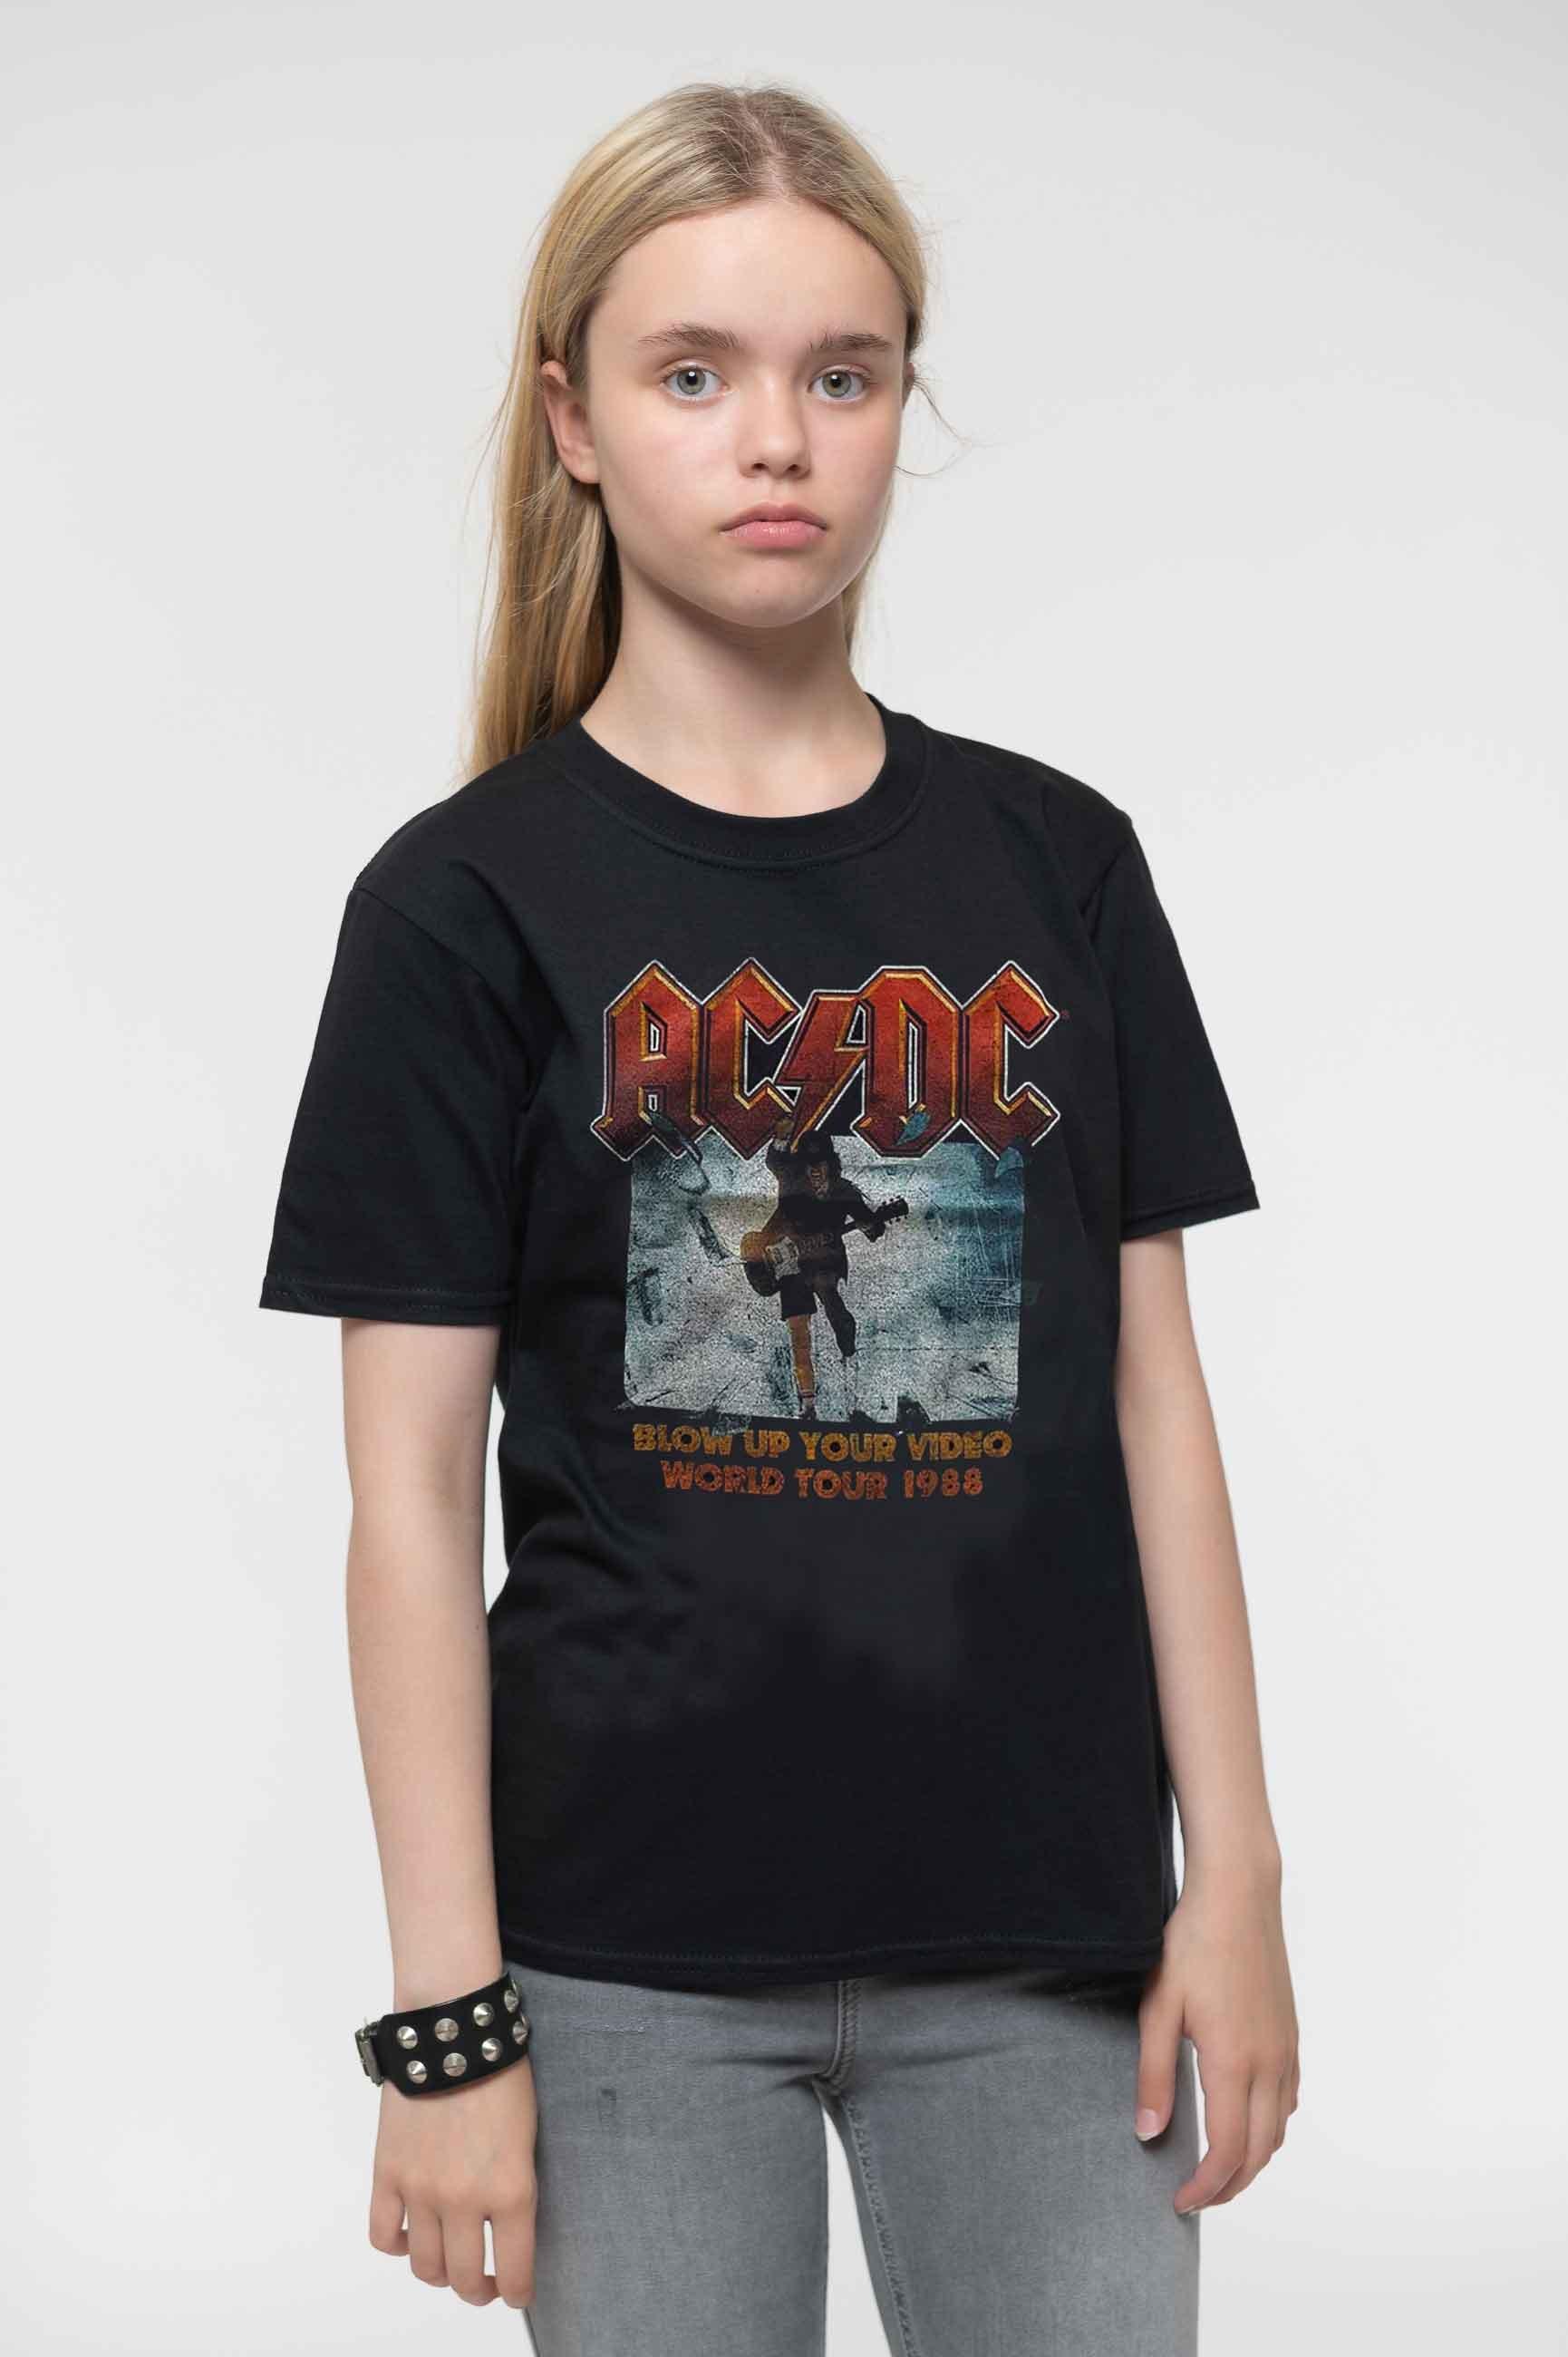 Взорви свою футболку с видео AC/DC, черный